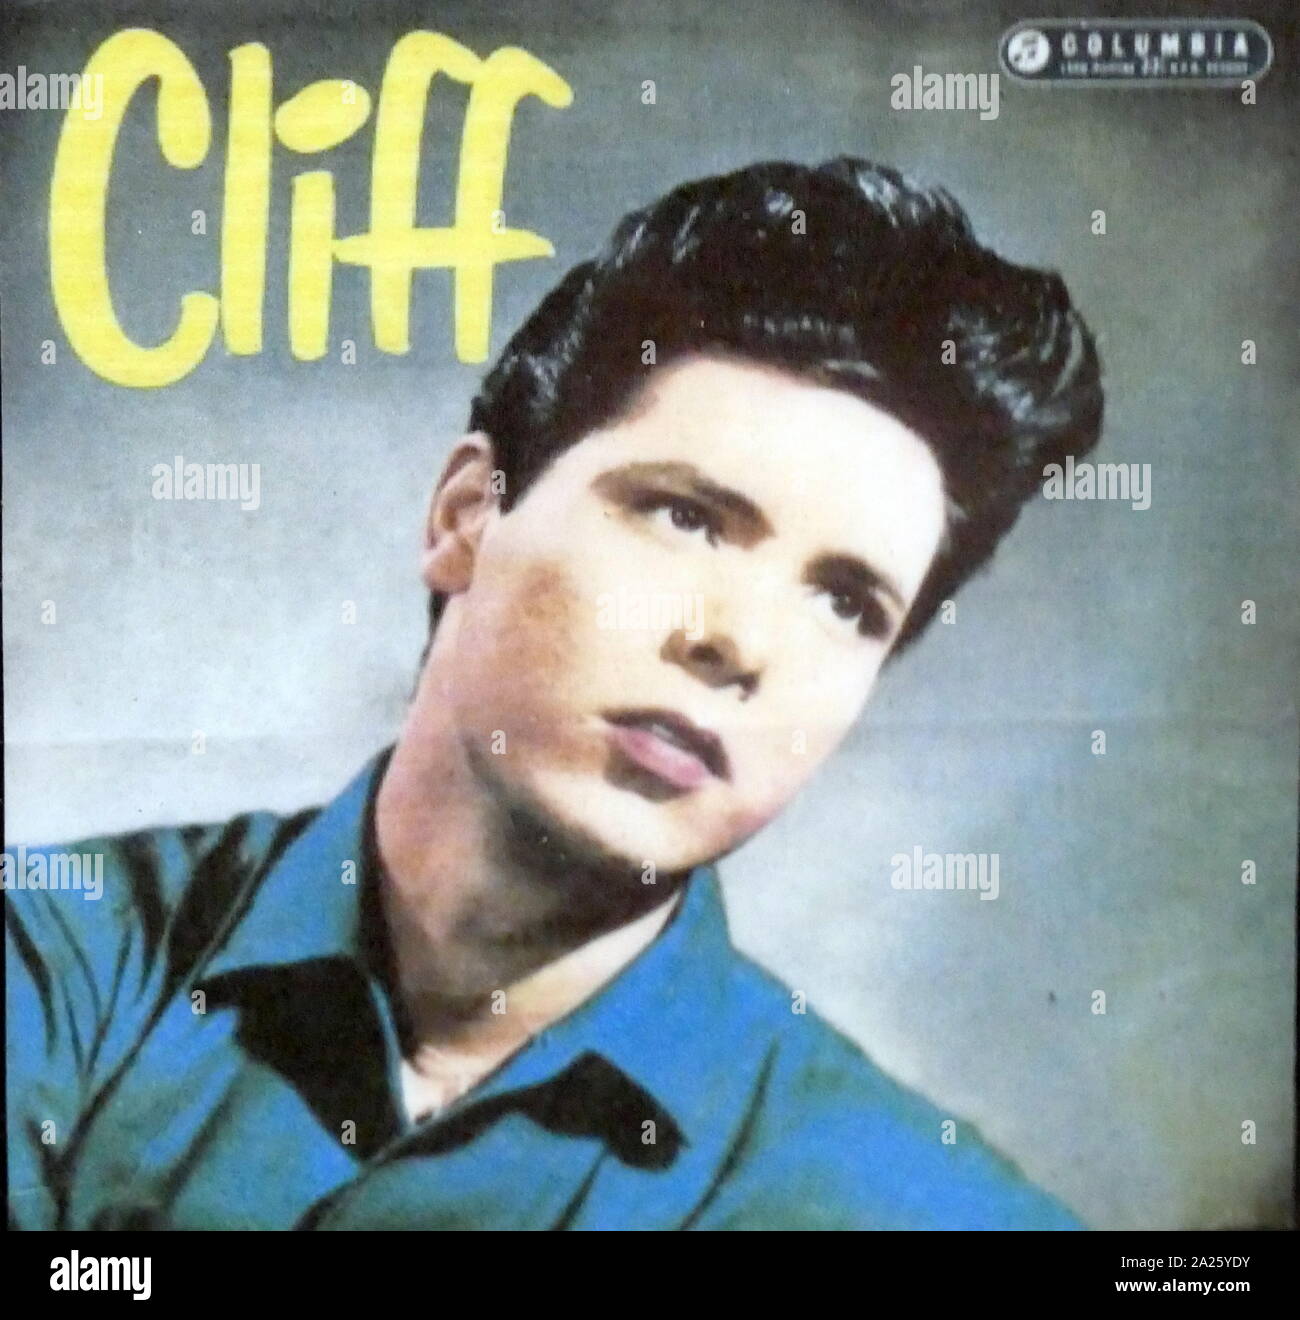 Foto von einem jüngeren Cliff Richard unter Columbia Records. Cliff Richard (1940 -) ein britischer Pop Sänger, Musiker, Performer, Schauspieler und Philanthrop. Stockfoto